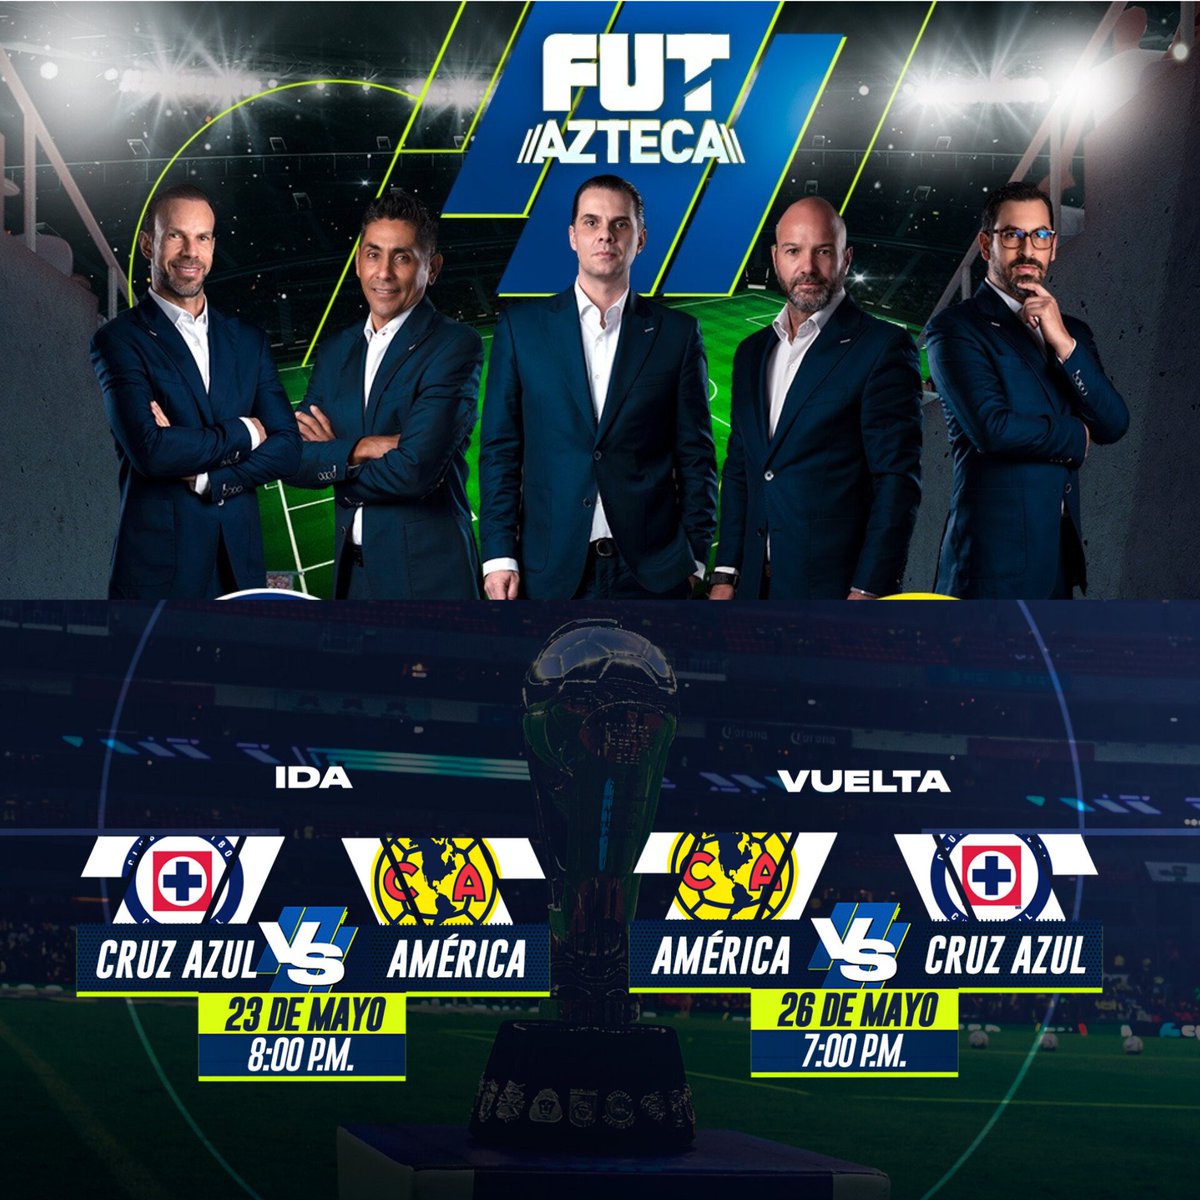 ¡TV AZTECA TRANSMITIRÁ LA FINAL DE LA LIGA MX! TV Azteca Deportes anuncia la transmisión de la final de ida entre Cruz Azul y América por la señal de Azteca 7. También, transmitirán el partido de vuelta del domingo.